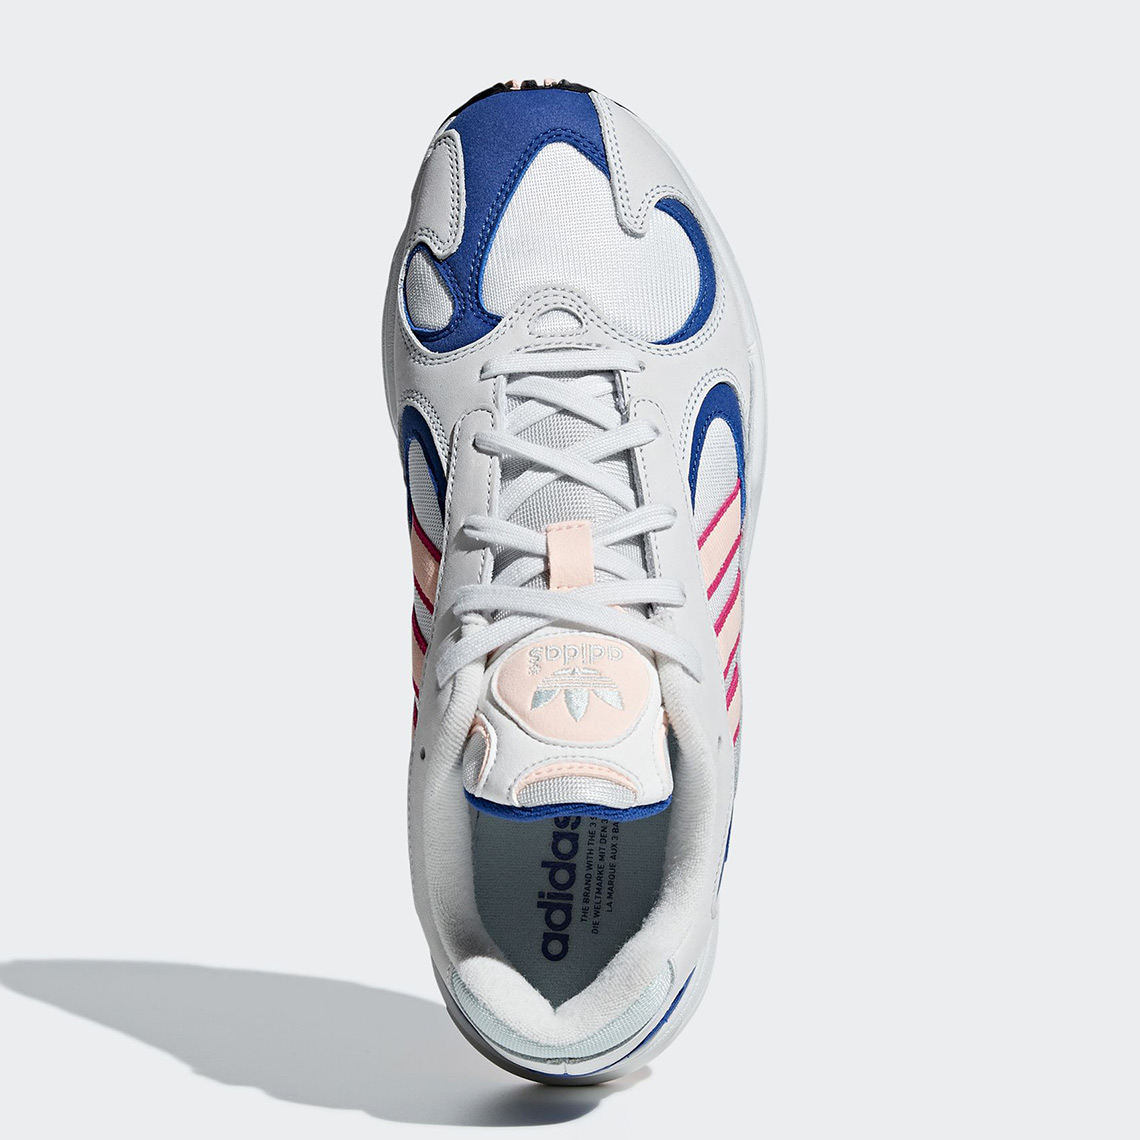 adidas yung 1 white blue pink